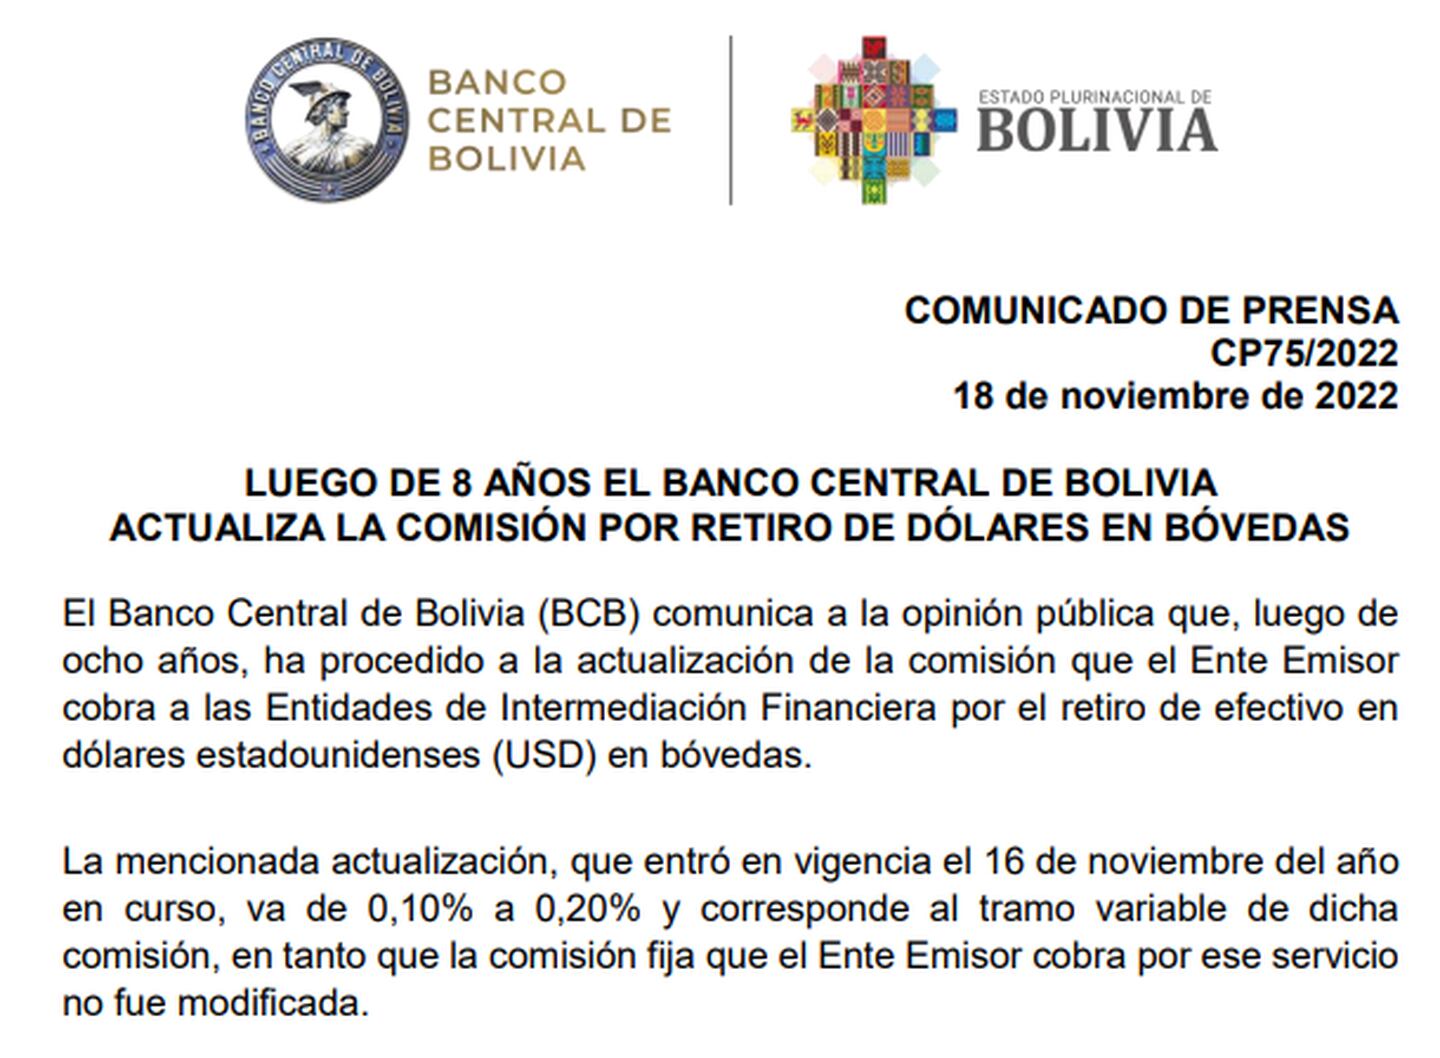 Banco Central de Boliviadfd